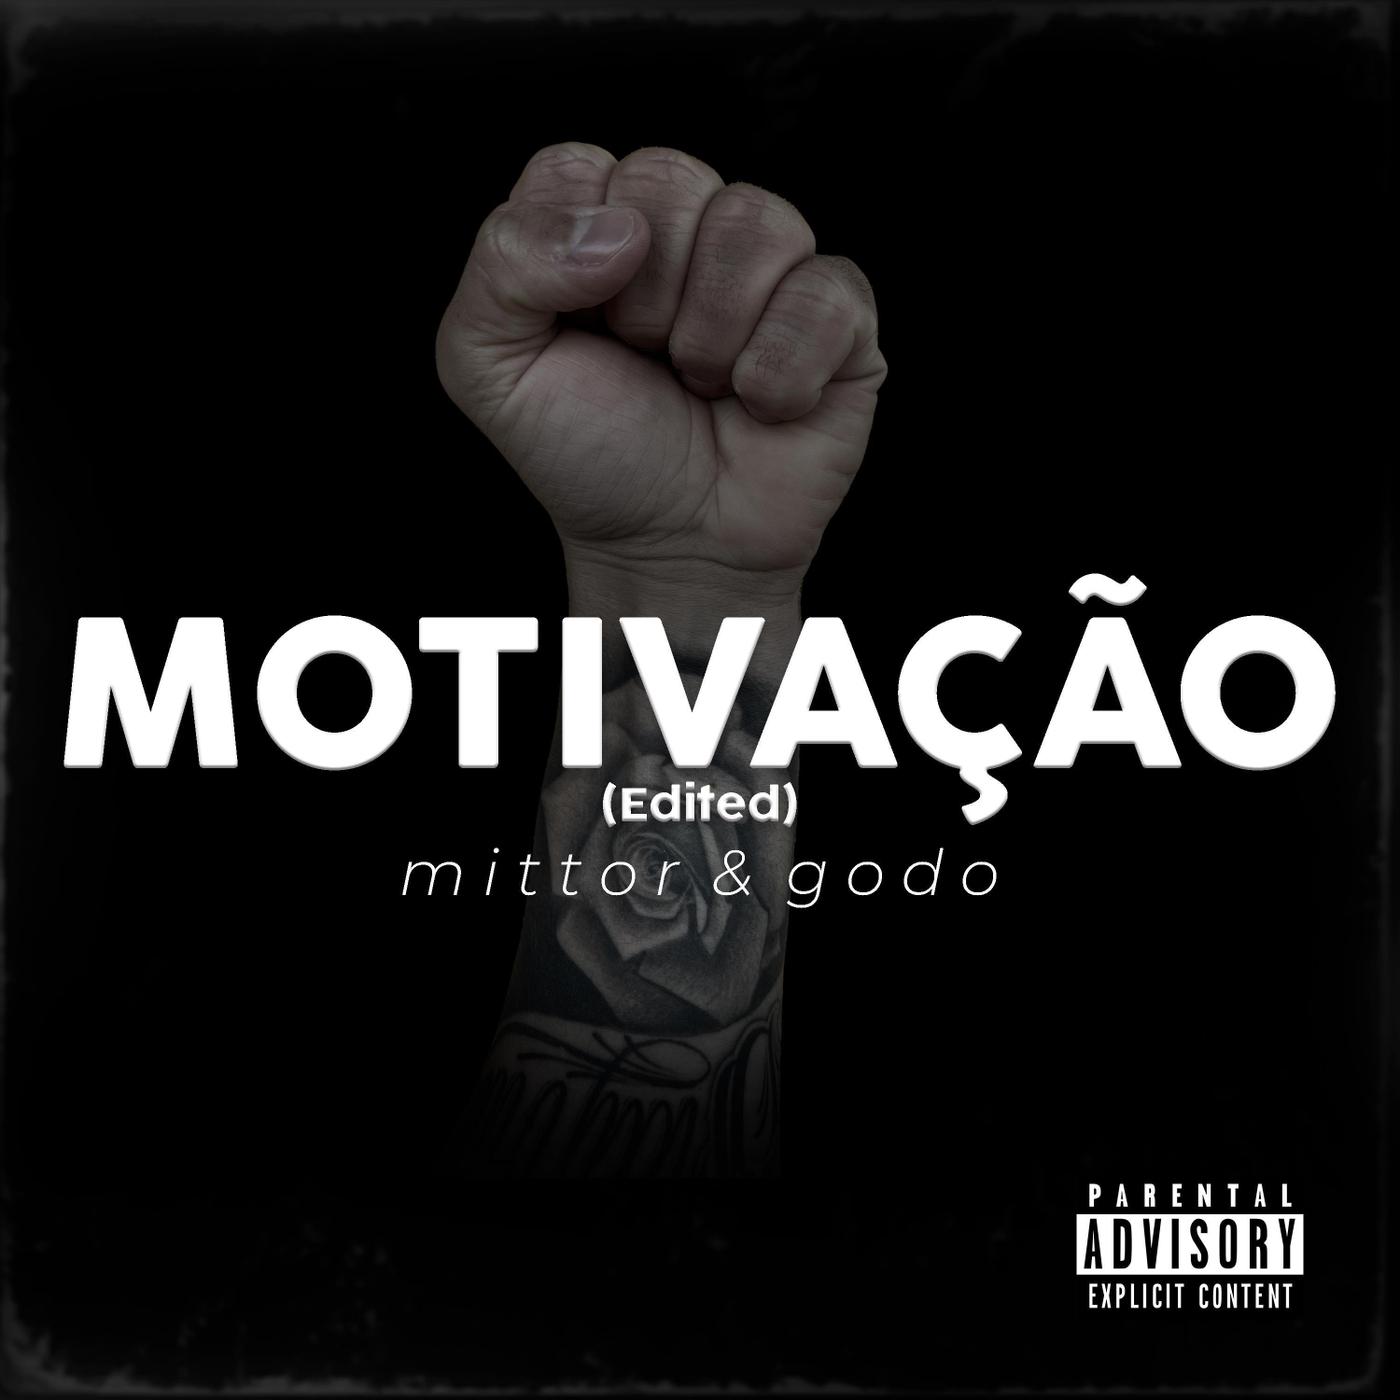 Mittor - Motivação (Edited)